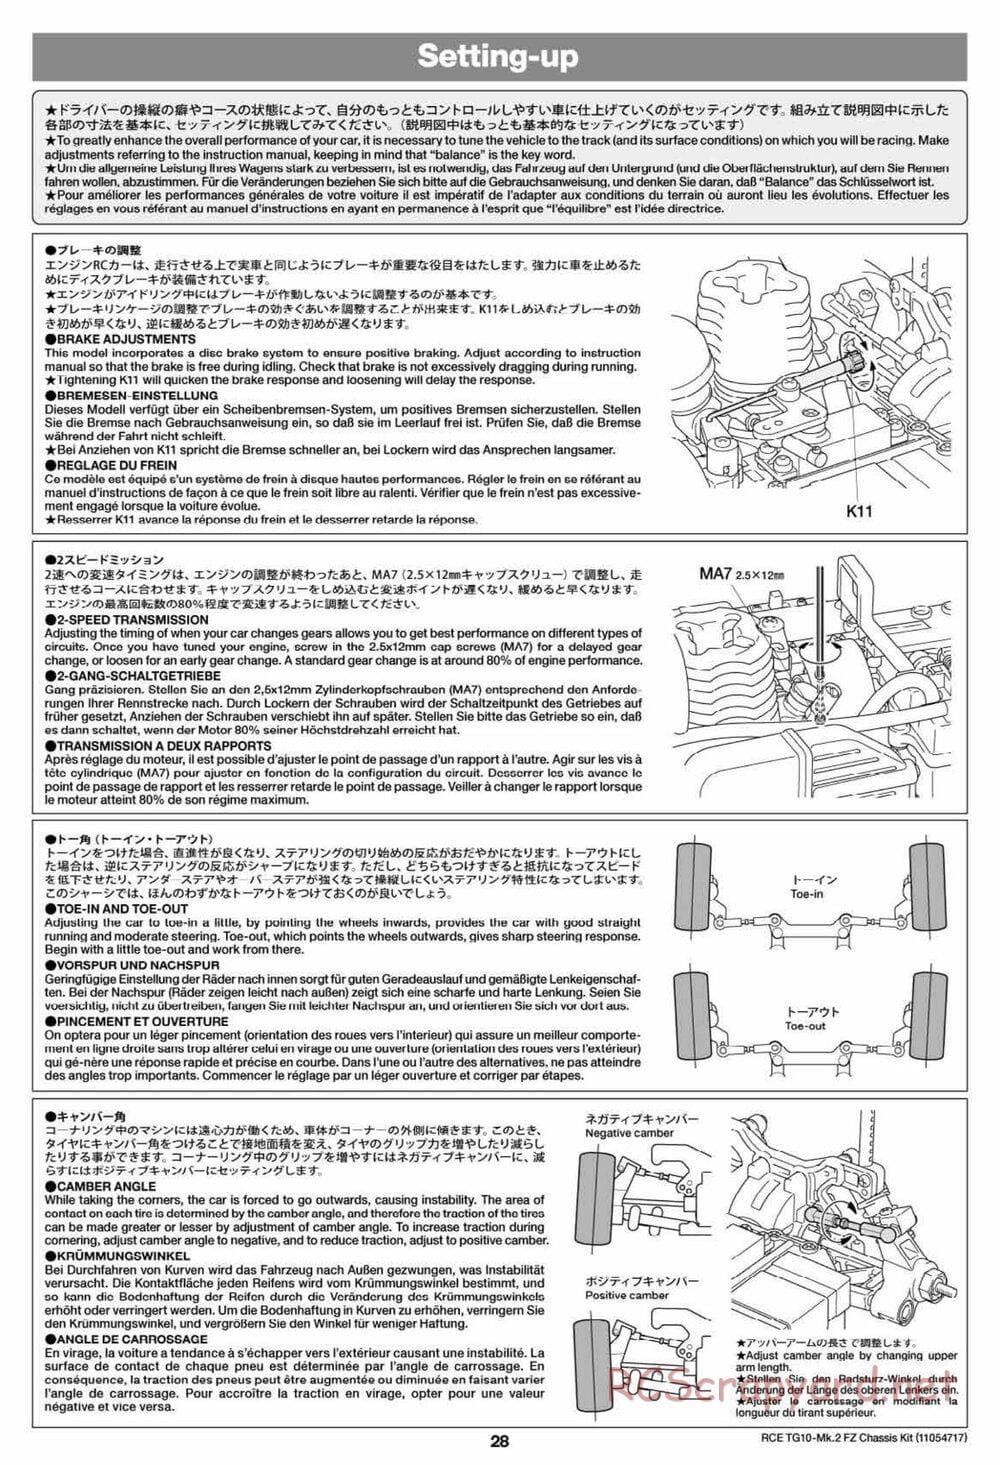 Tamiya - TG10 Mk.2 FZ Chassis - Manual - Page 28